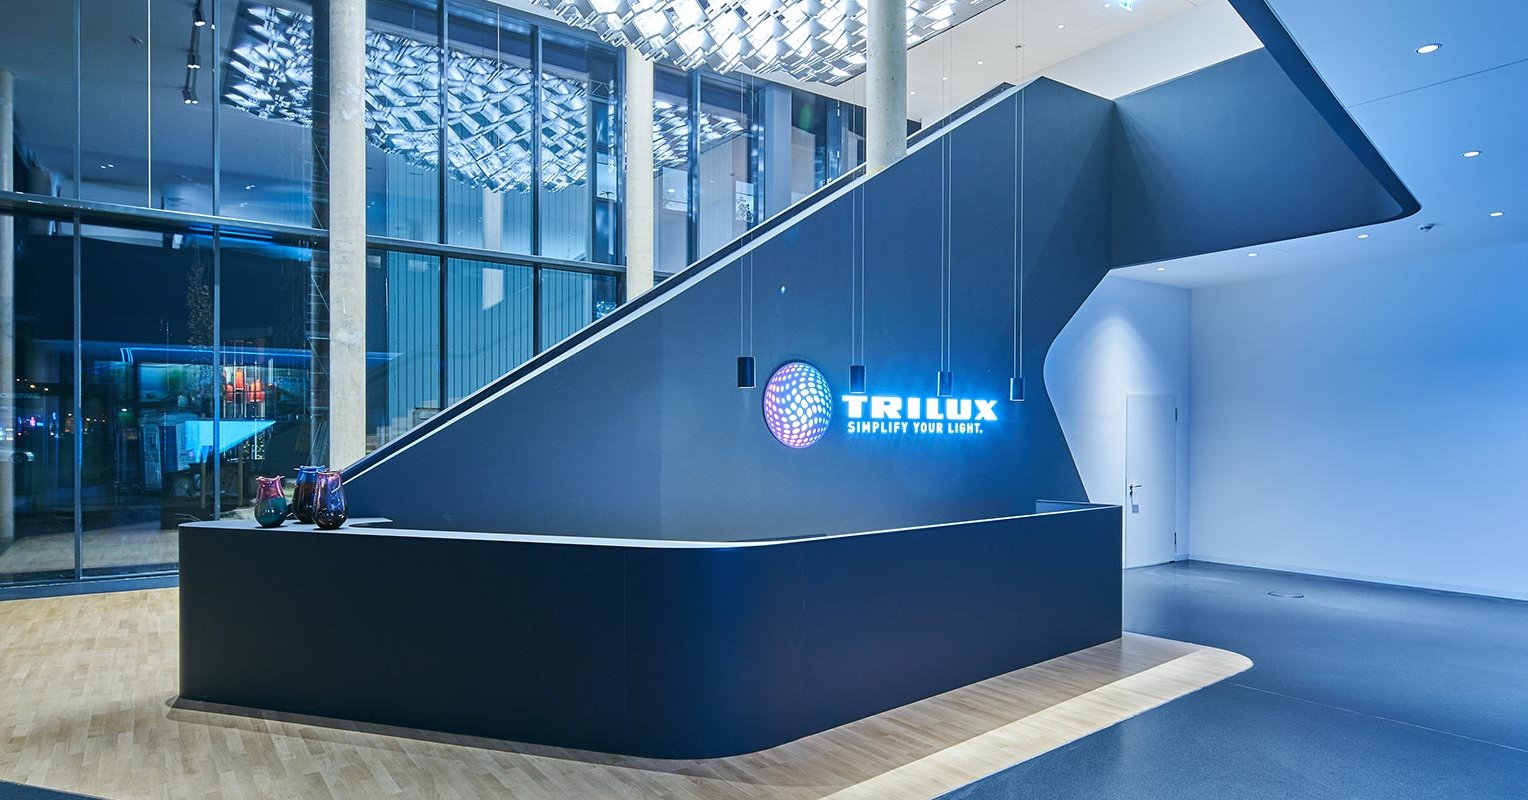 (c) Trilux.com